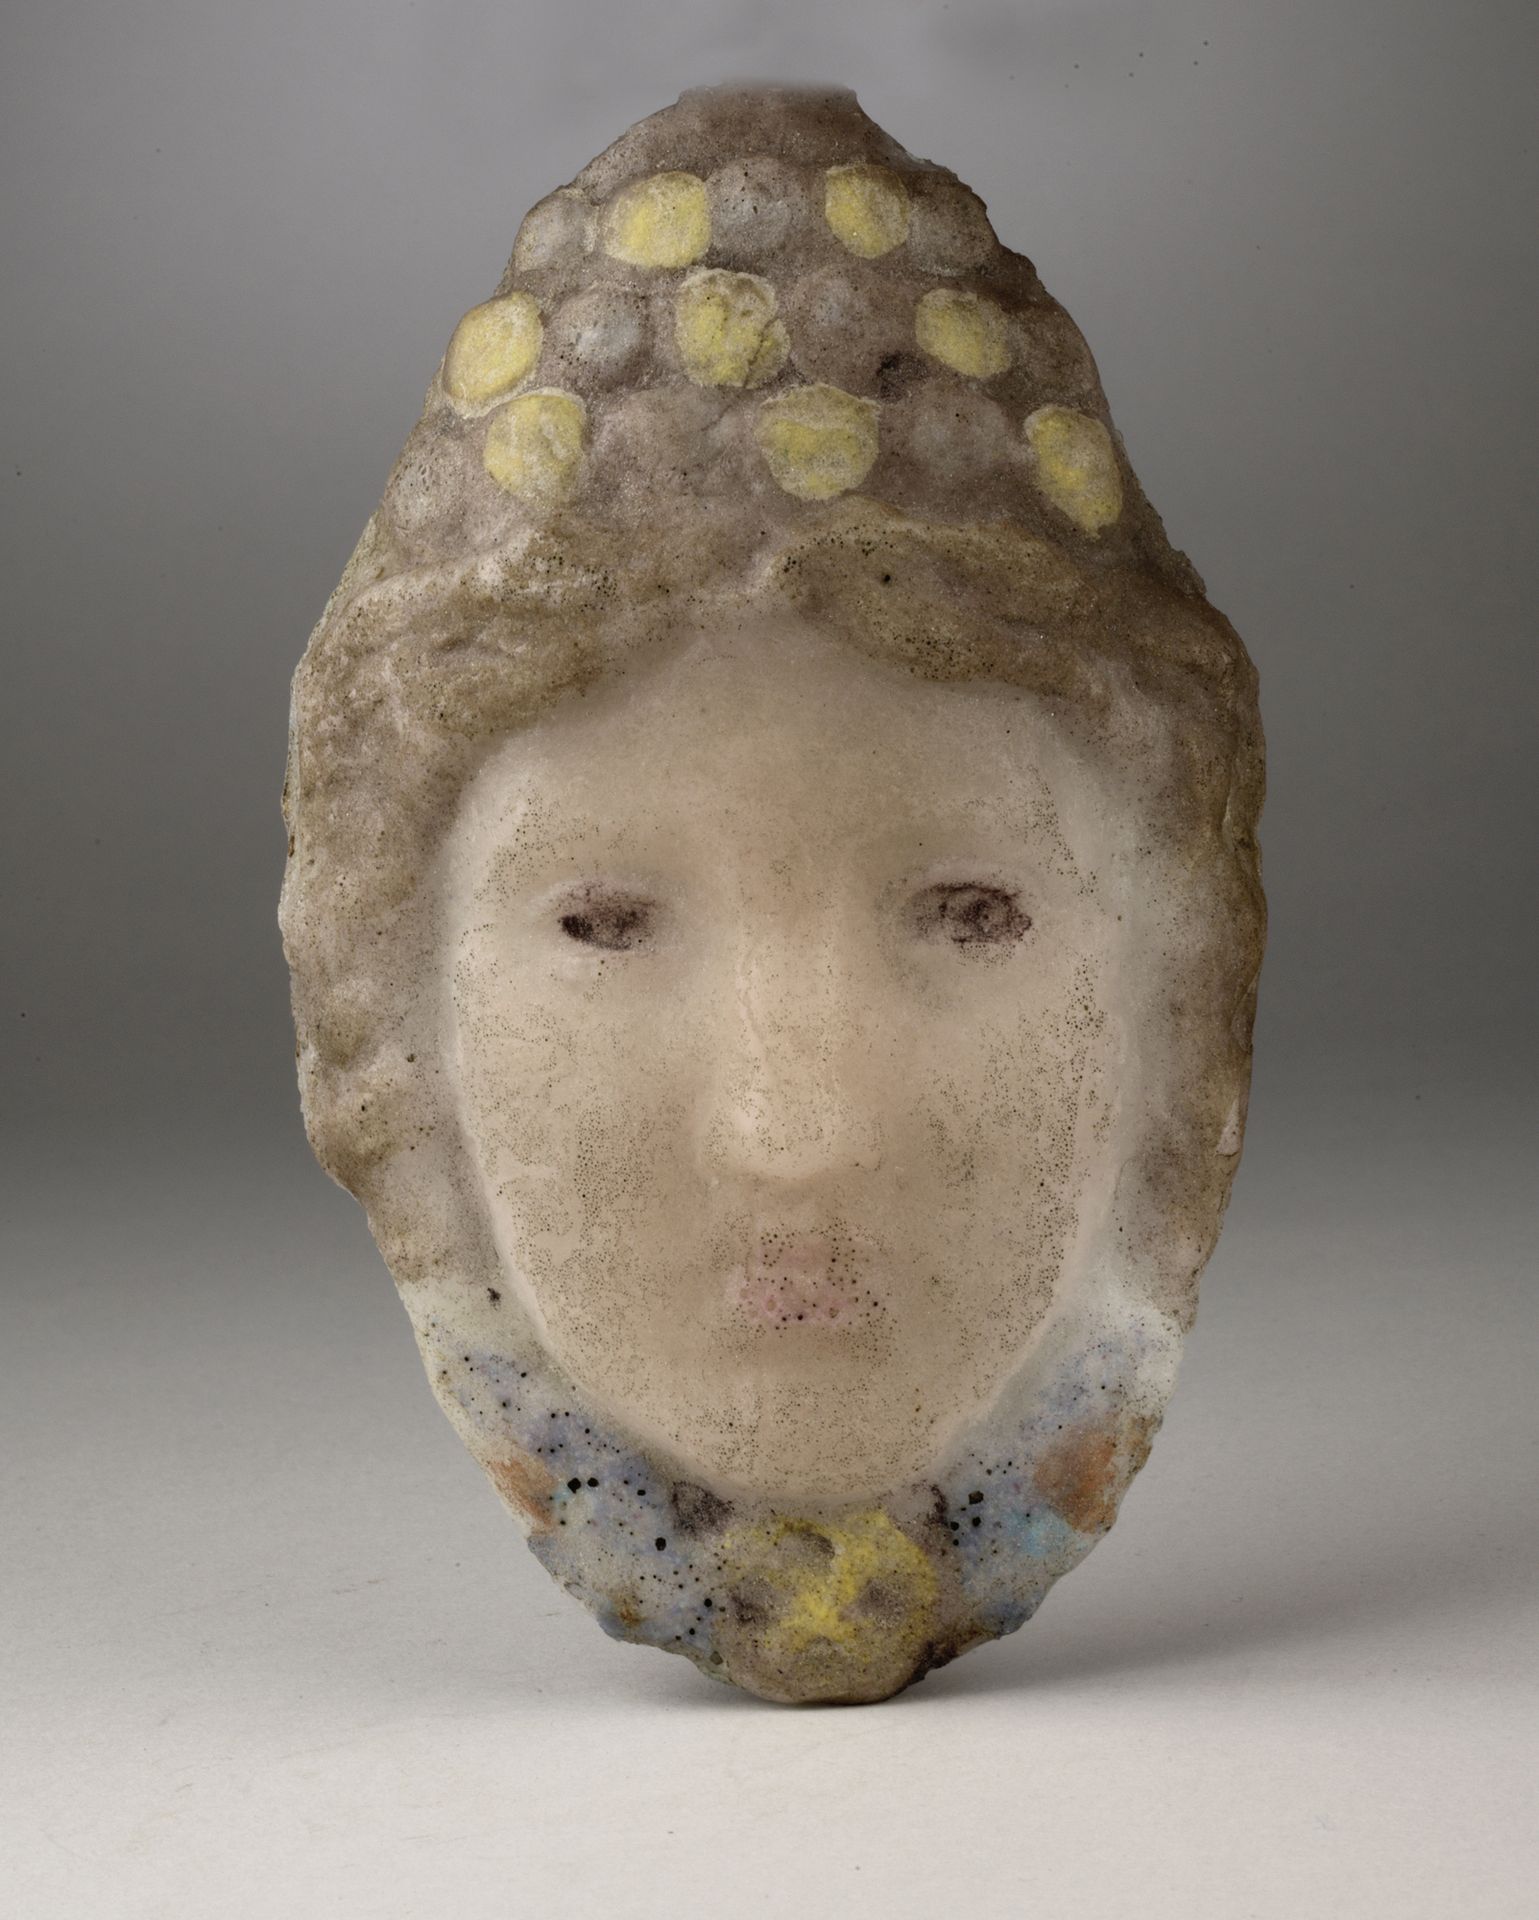 Null 亨利-克罗斯（1840-1907）
头戴皇冠的少女头像
多色玻璃浆糊。
顶部有小缺口
H.16.5 厘米

亨利-克罗斯是重新发现玻璃浆技术的先驱之一&hellip;